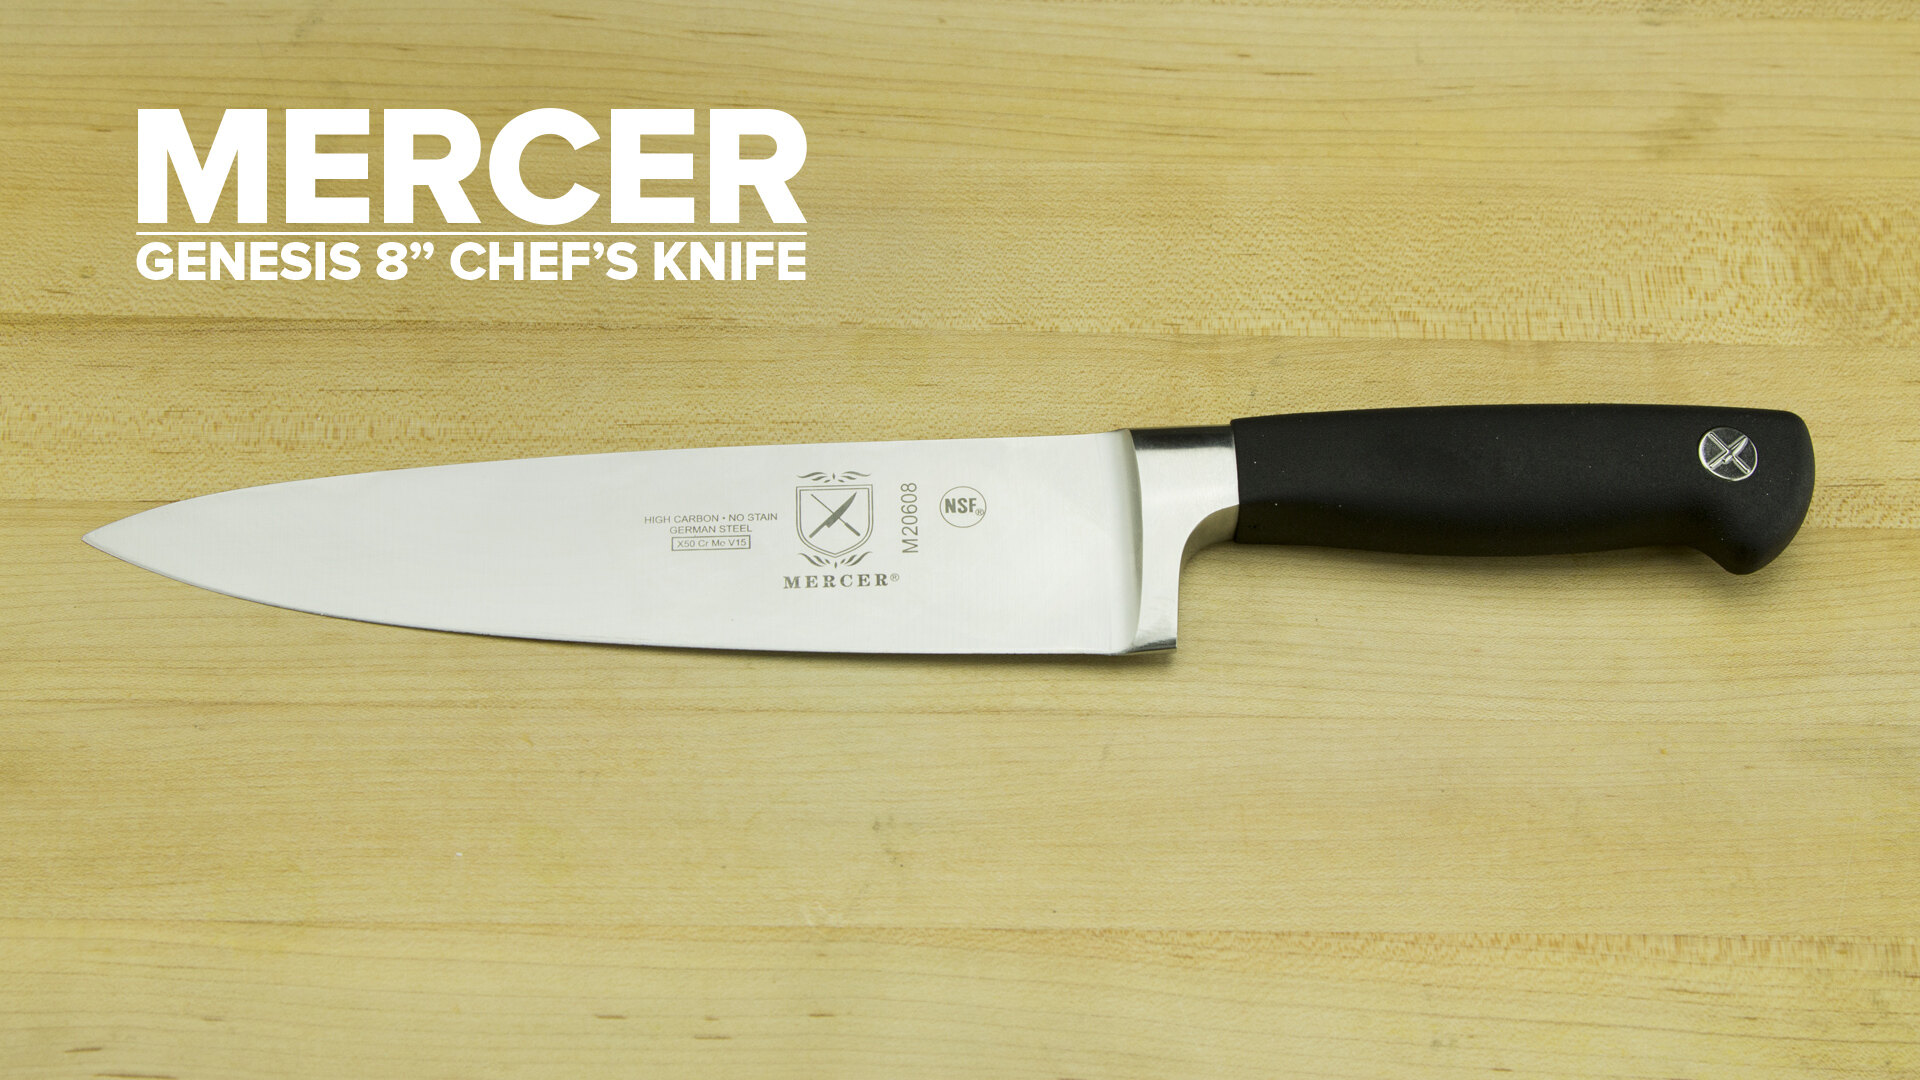 Mercer Genesis 8 Chef's Knife